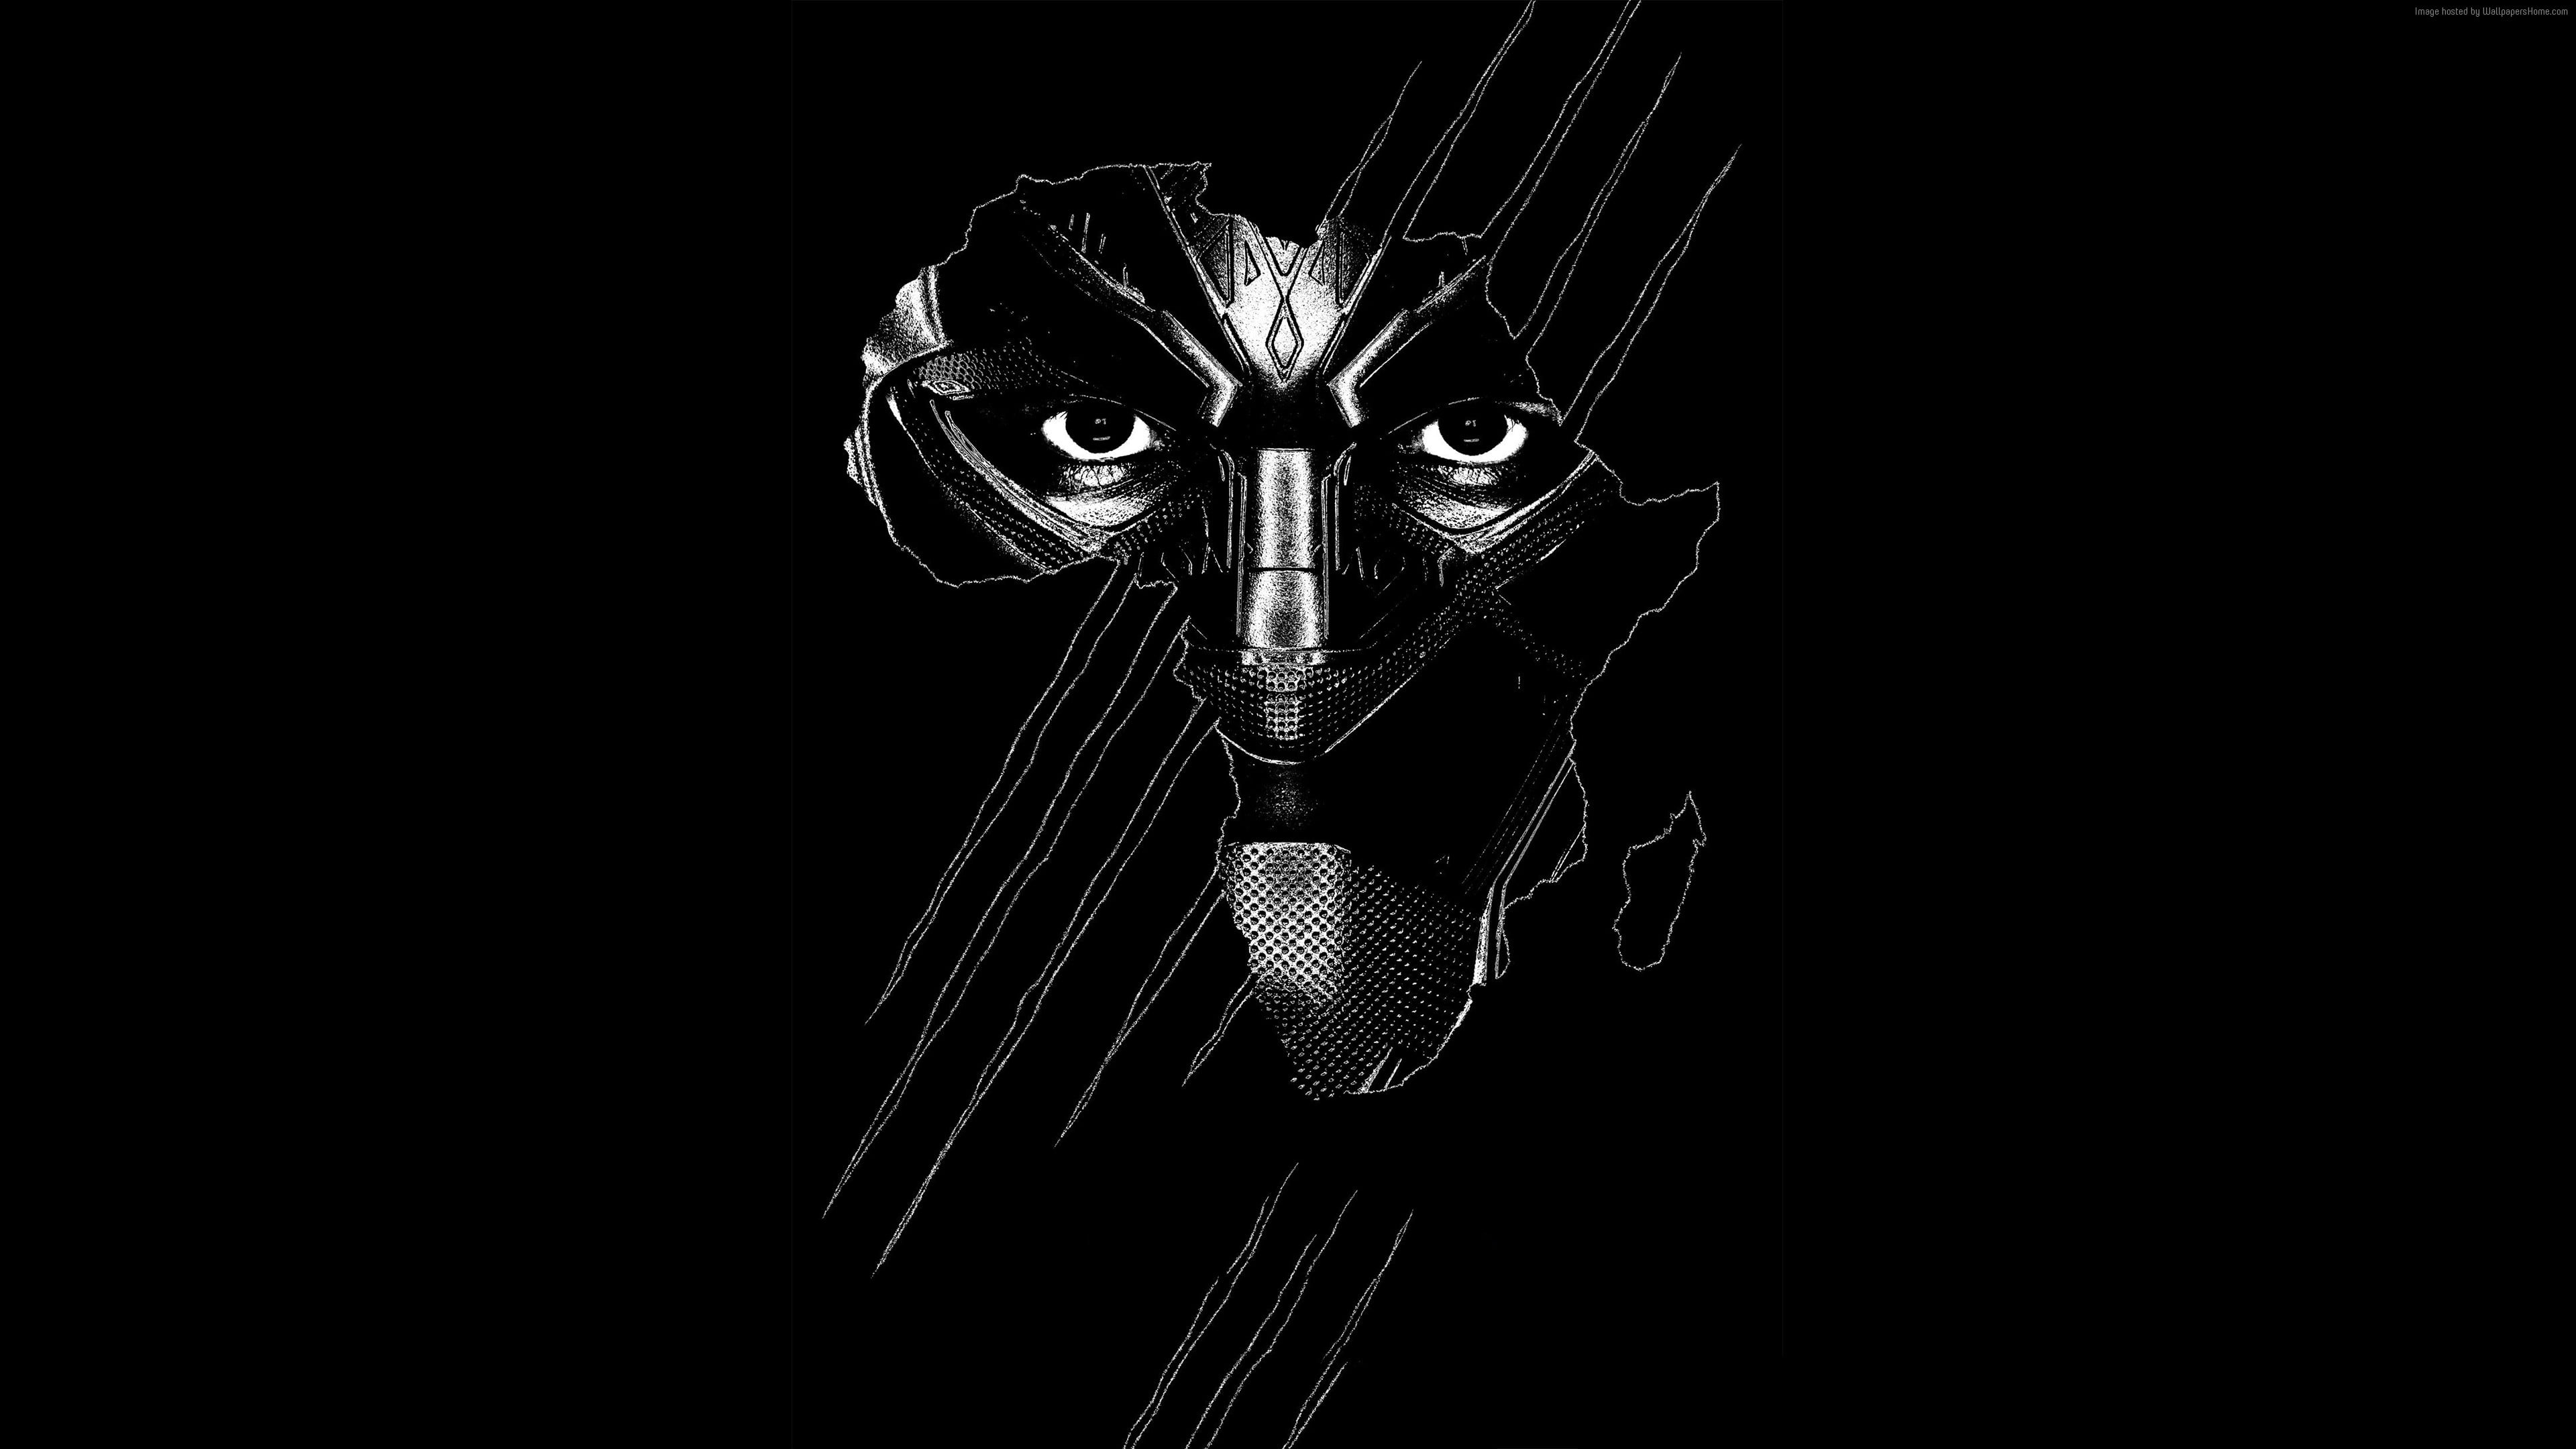 Poster Black Panther là bộ phim siêu anh hùng đầy màu sắc và hấp dẫn. Những tấm poster quảng cáo với hình ảnh nhân vật chính và những đường chữ lôi cuốn chắc chắn sẽ thu hút sự chú ý của bạn. Hãy xem qua các hình ảnh liên quan đến từ khóa này để cùng tận hưởng không khí phiêu lưu và hành động của Black Panther.